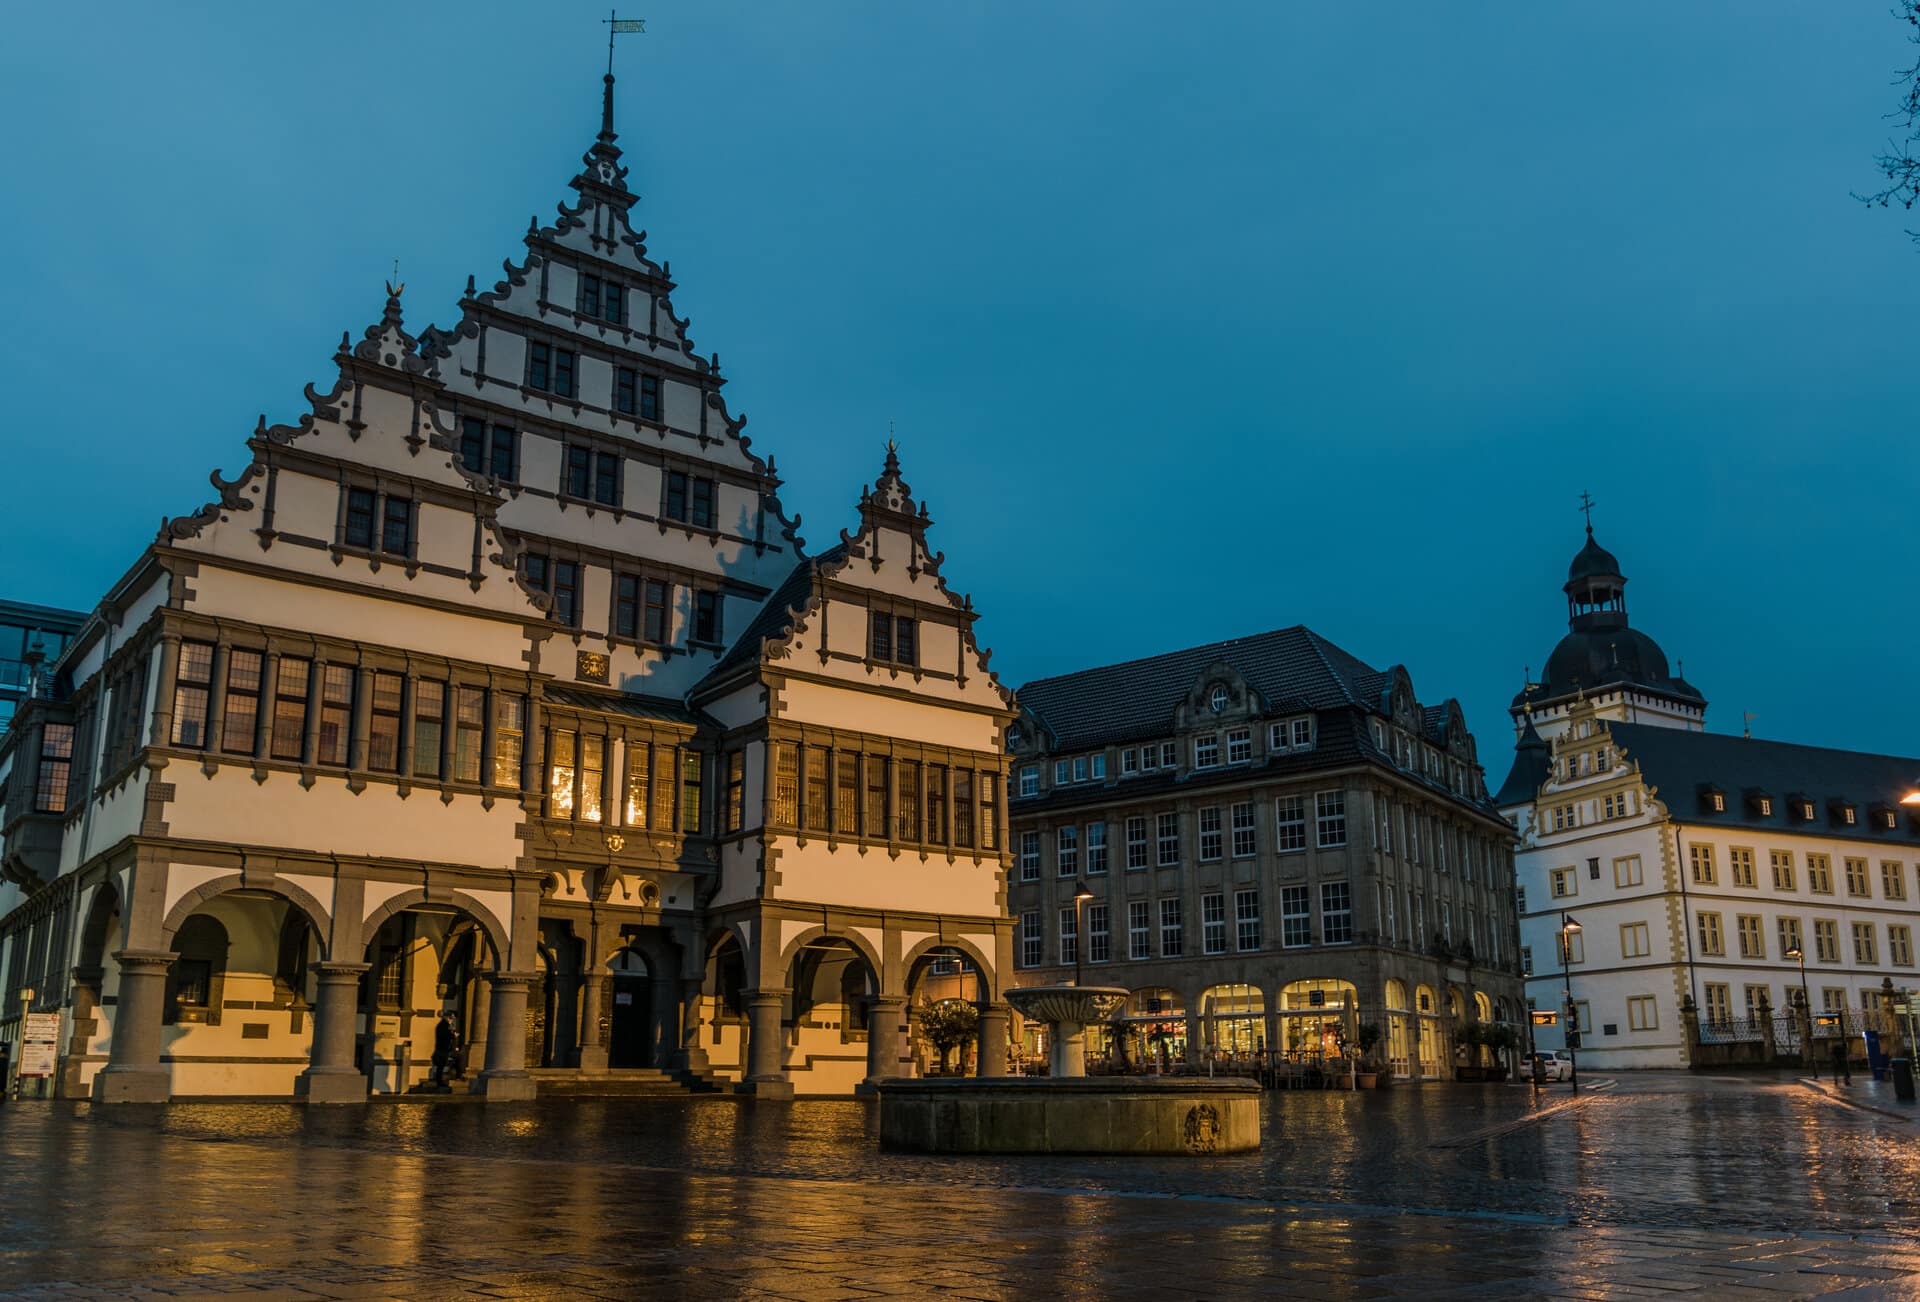 Rathaus Paderborn bei Regenwetter - schlechtes Wetter in Paderborn